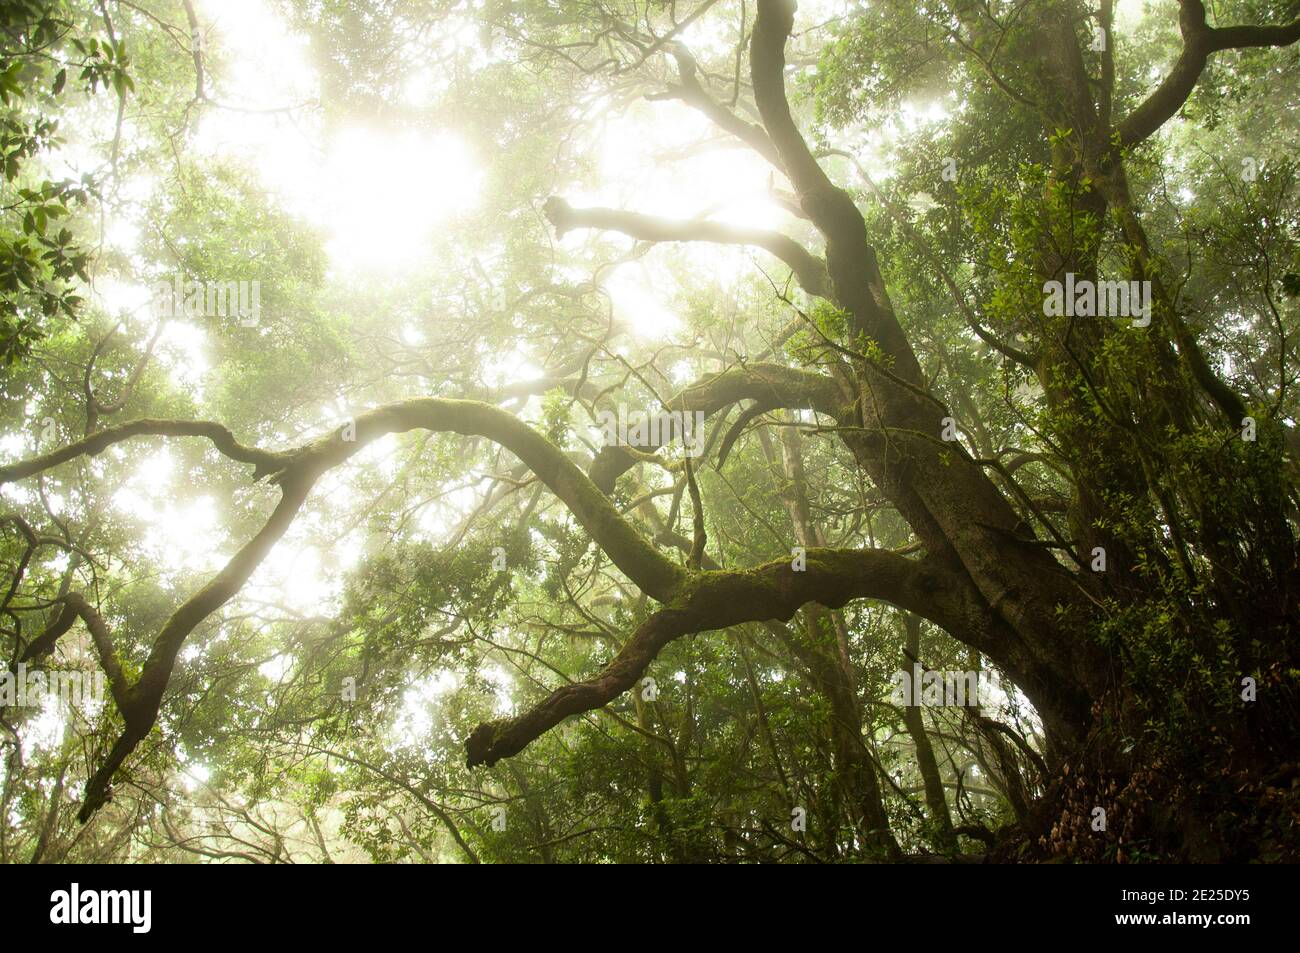 il sole splende attraverso i rami degli alberi di alloro nella nebbiosa foresta pluviale del parco nazionale di la gomera. Foto di alta qualità Foto Stock